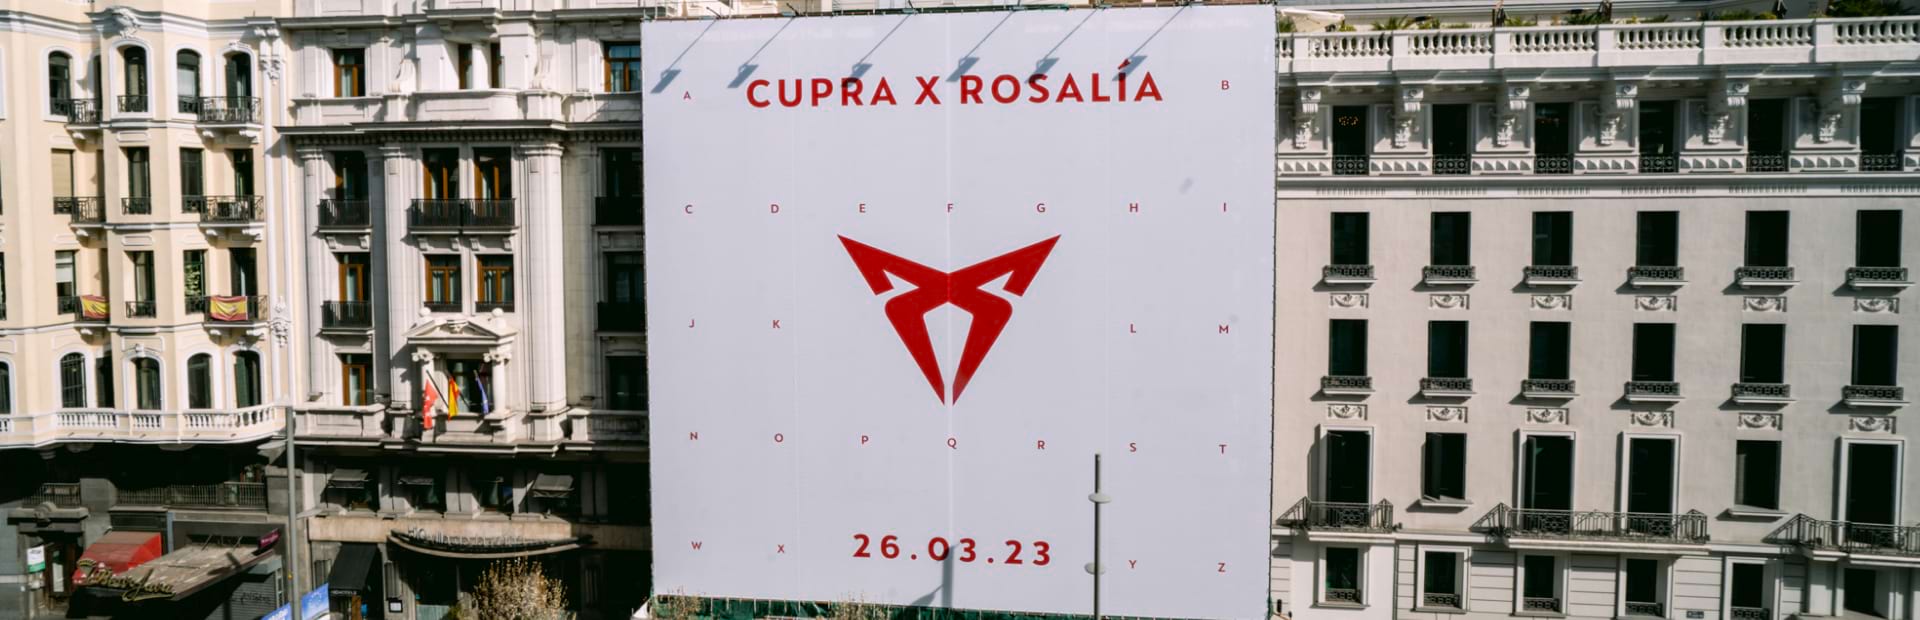 CUPRA rozpoczęła niecodzienną współpracę z gwiazdą muzyki latynoskiej – Rosalíą